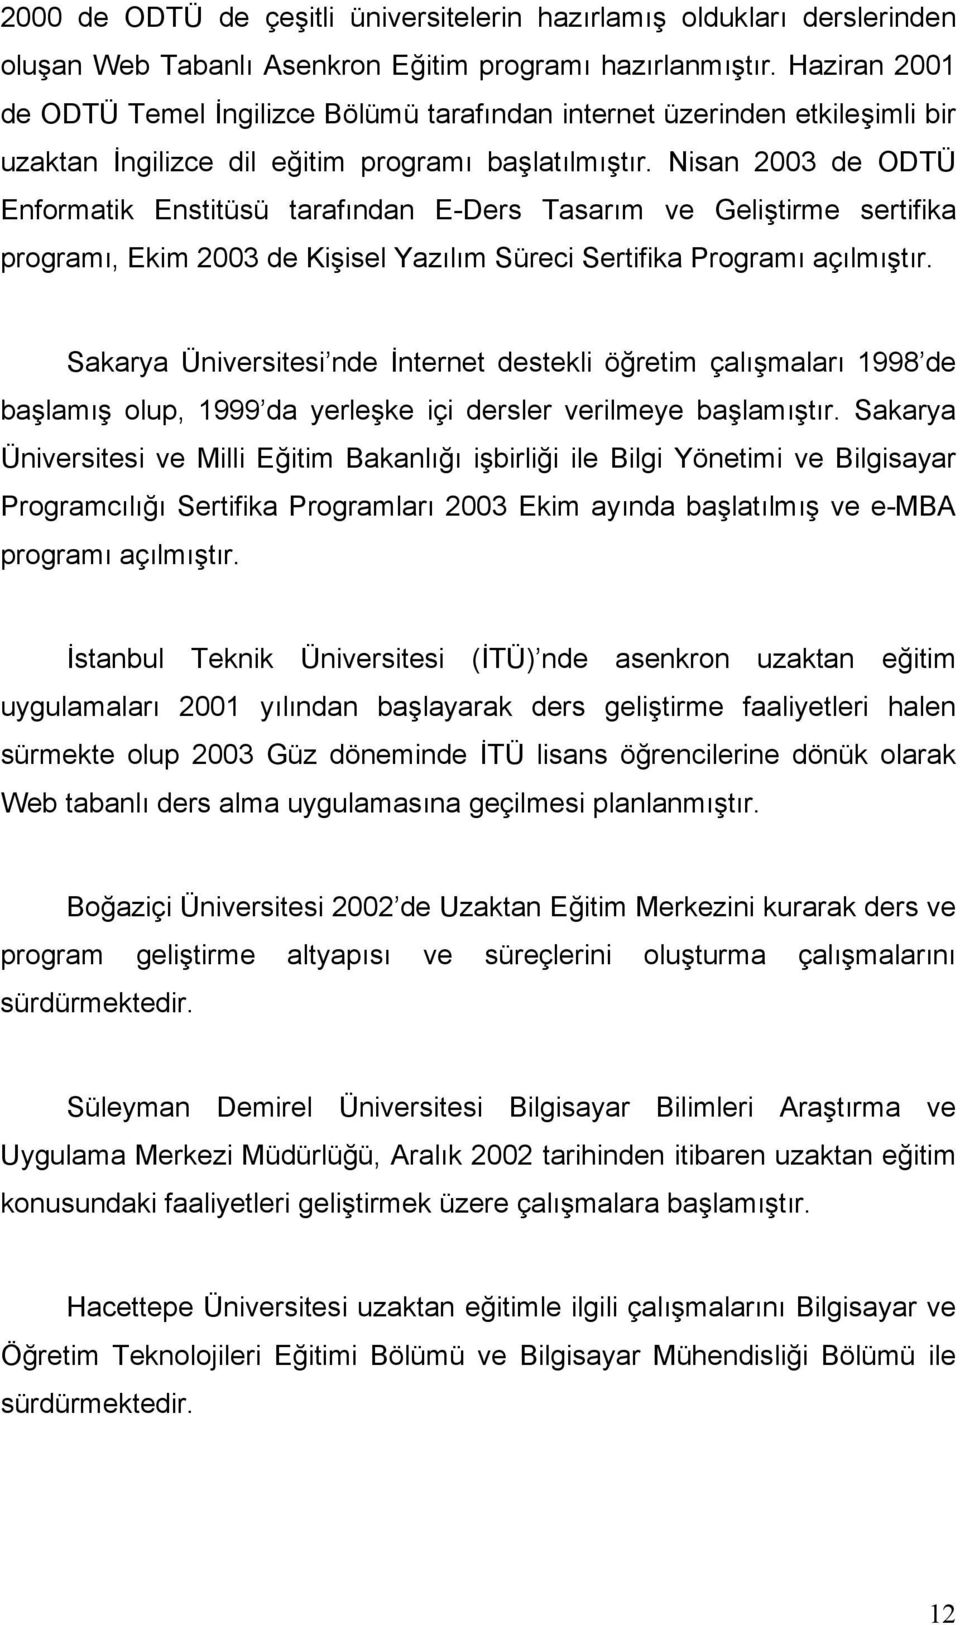 Nisan 2003 de ODTÜ Enformatik Enstitüsü tarafından E-Ders Tasarım ve Geliştirme sertifika programı, Ekim 2003 de Kişisel Yazılım Süreci Sertifika Programı açılmıştır.